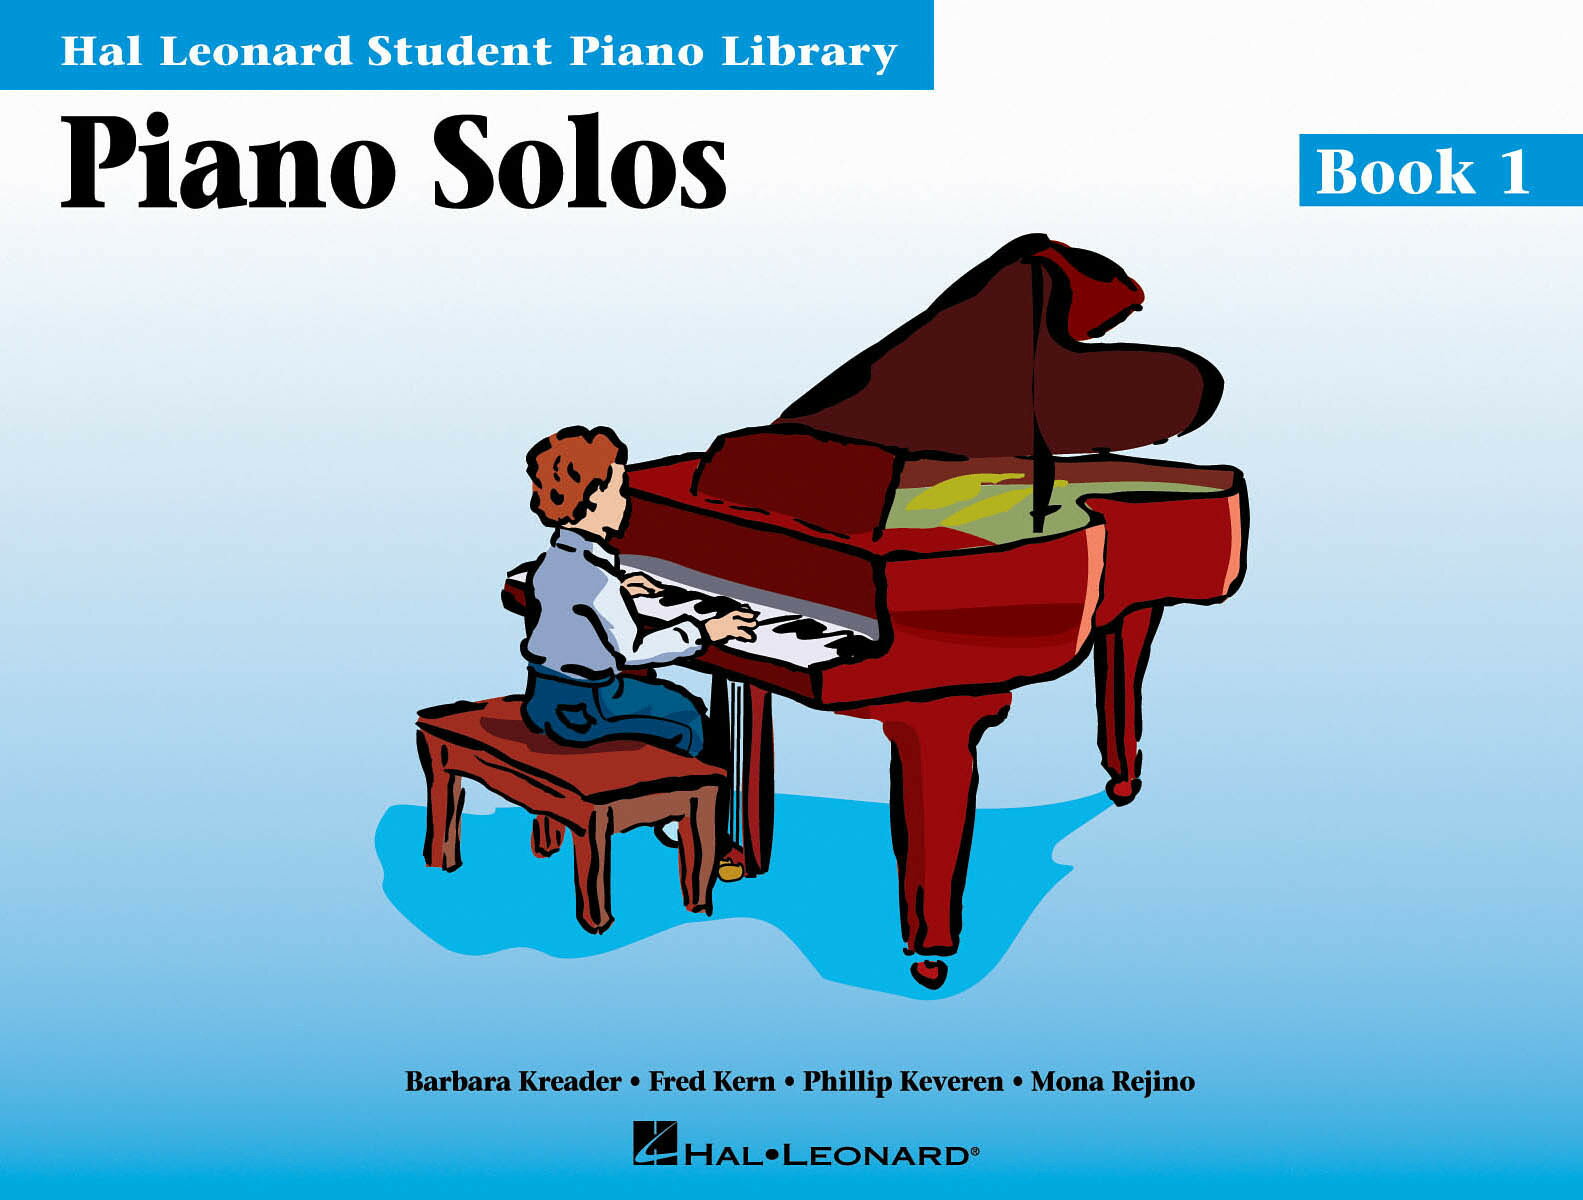 【輸入楽譜】ハル・レナード・ピアノ・ライブラリー: ソロ・ブック 第1巻